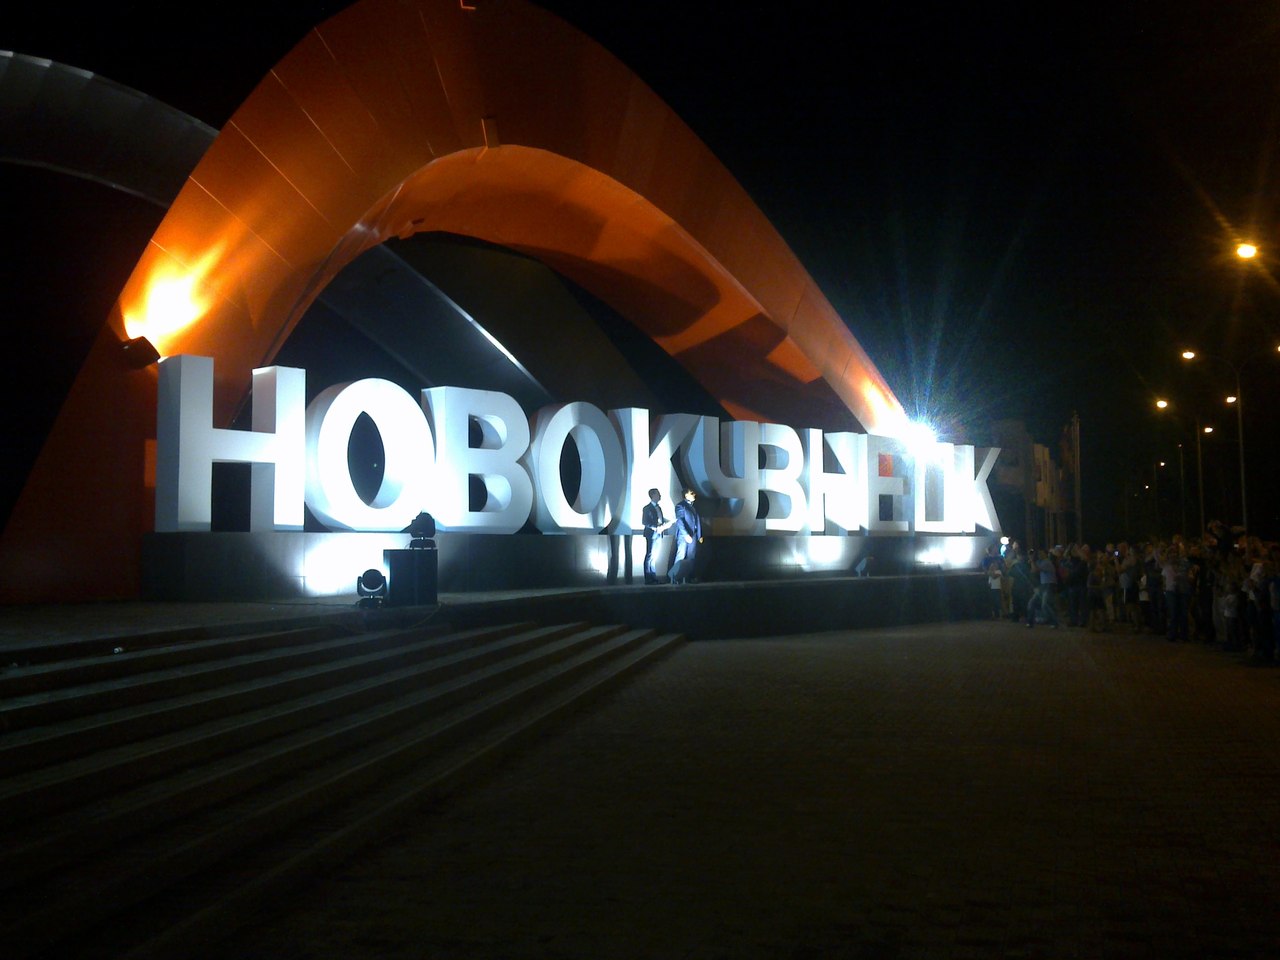 Стелла города Новосибирск